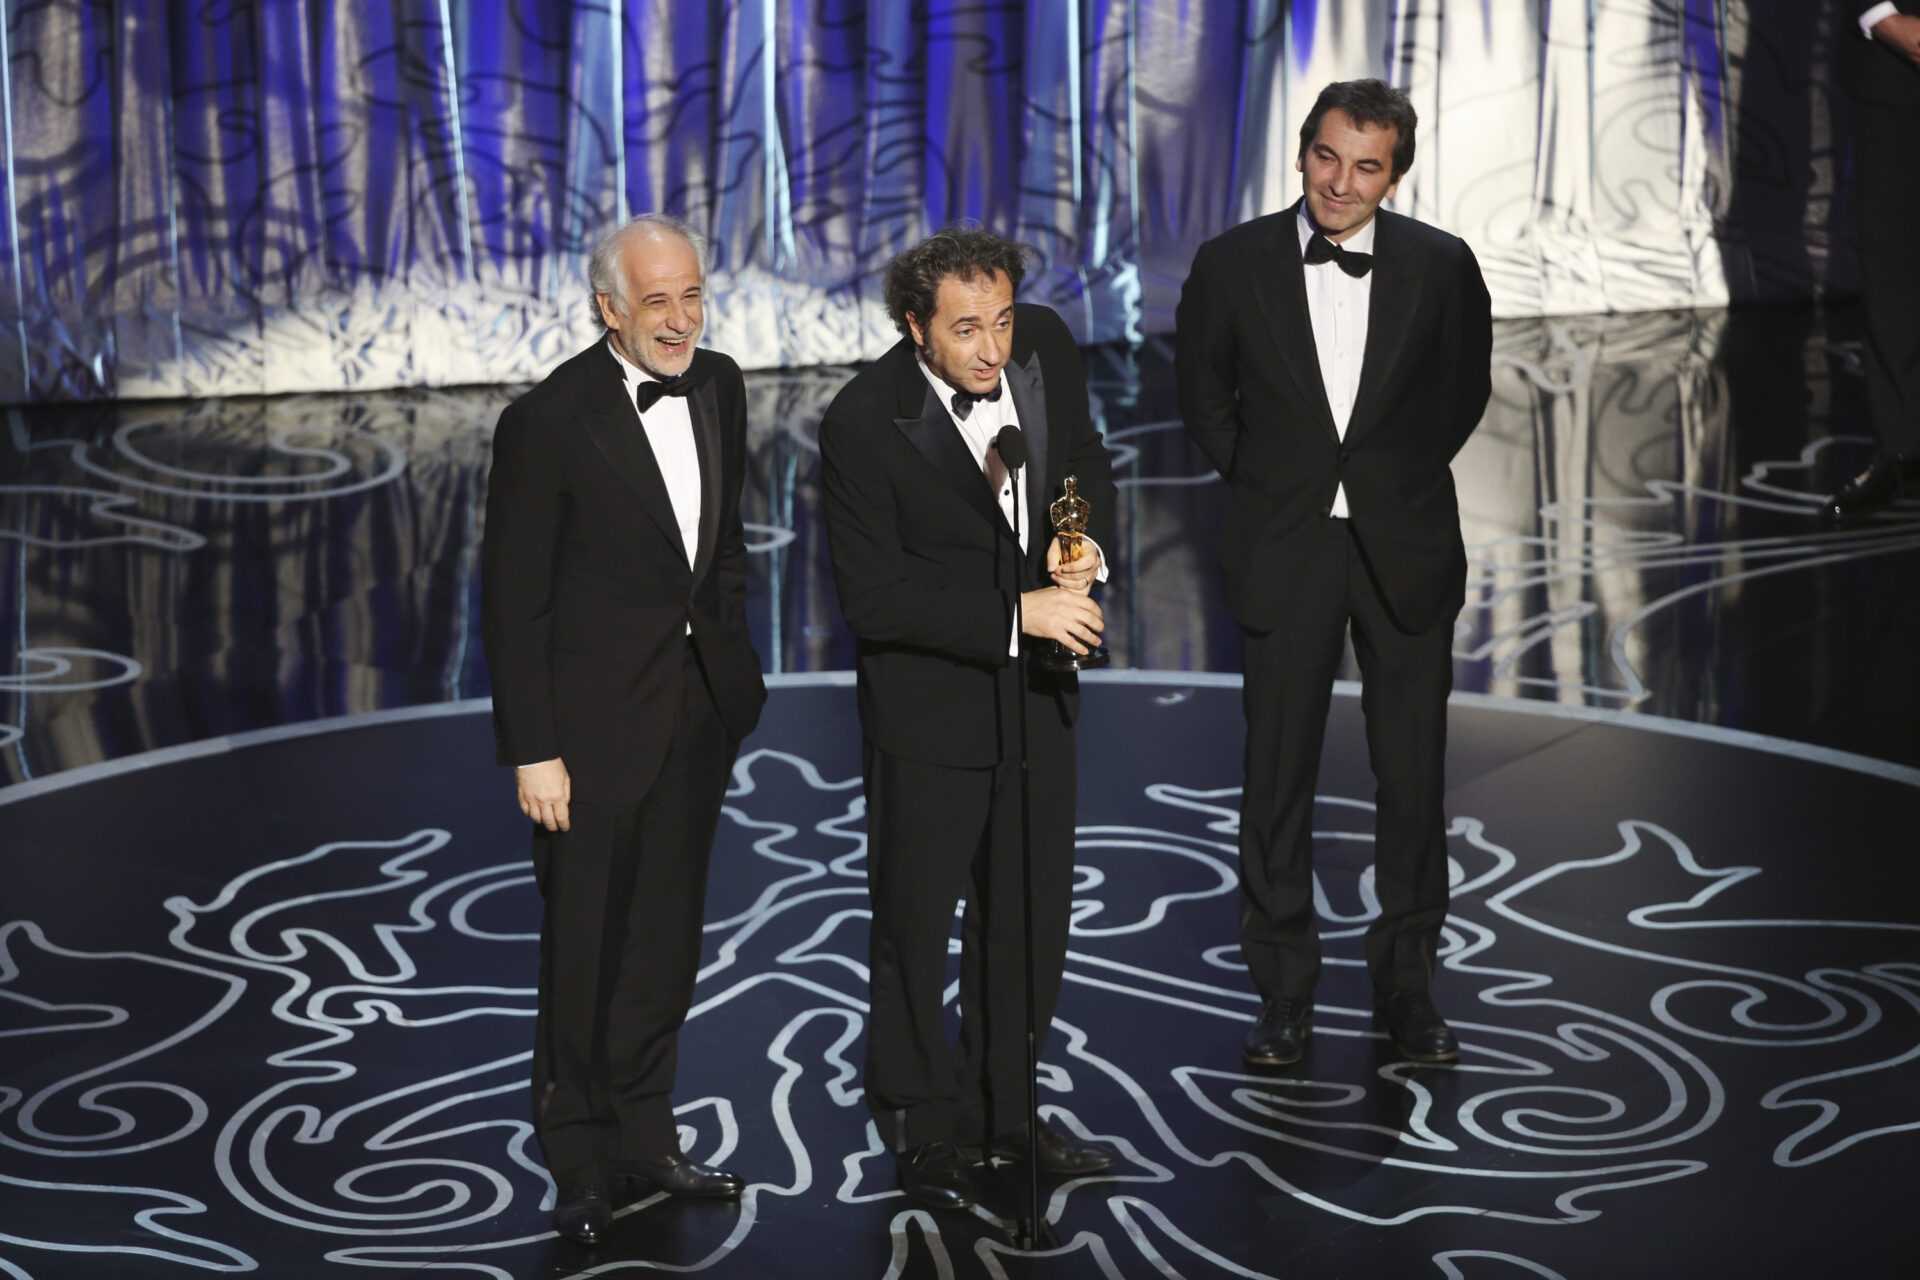 Su Cielo il meglio de La notte degli Oscar 2014 | Digitale terrestre: Dtti.it